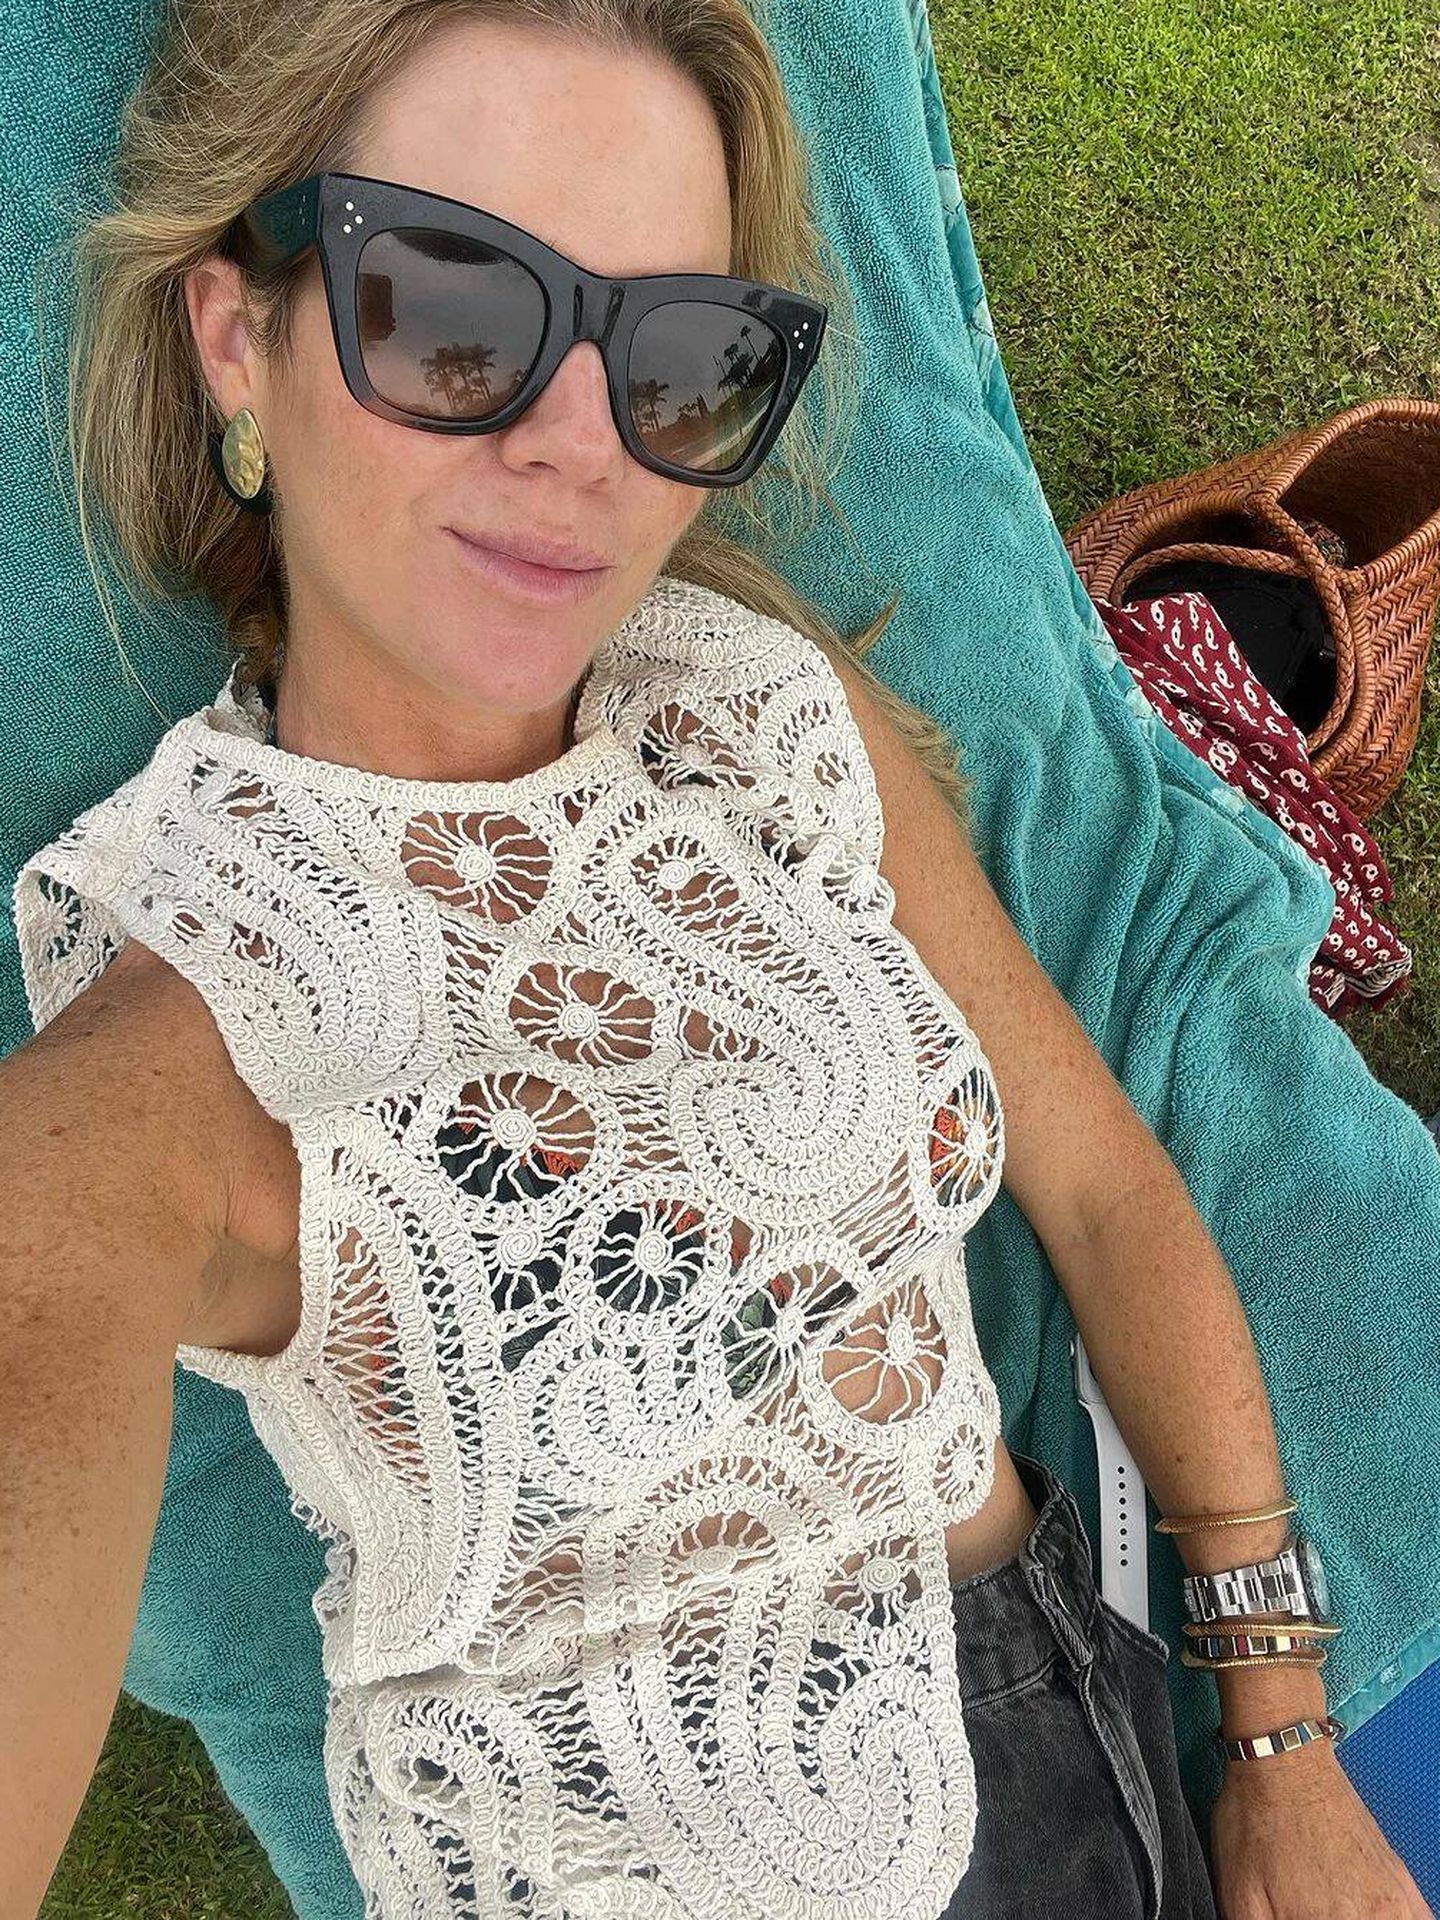 El top de Zara ideal para ir a la playa. (Instagram/ @ameliabono)